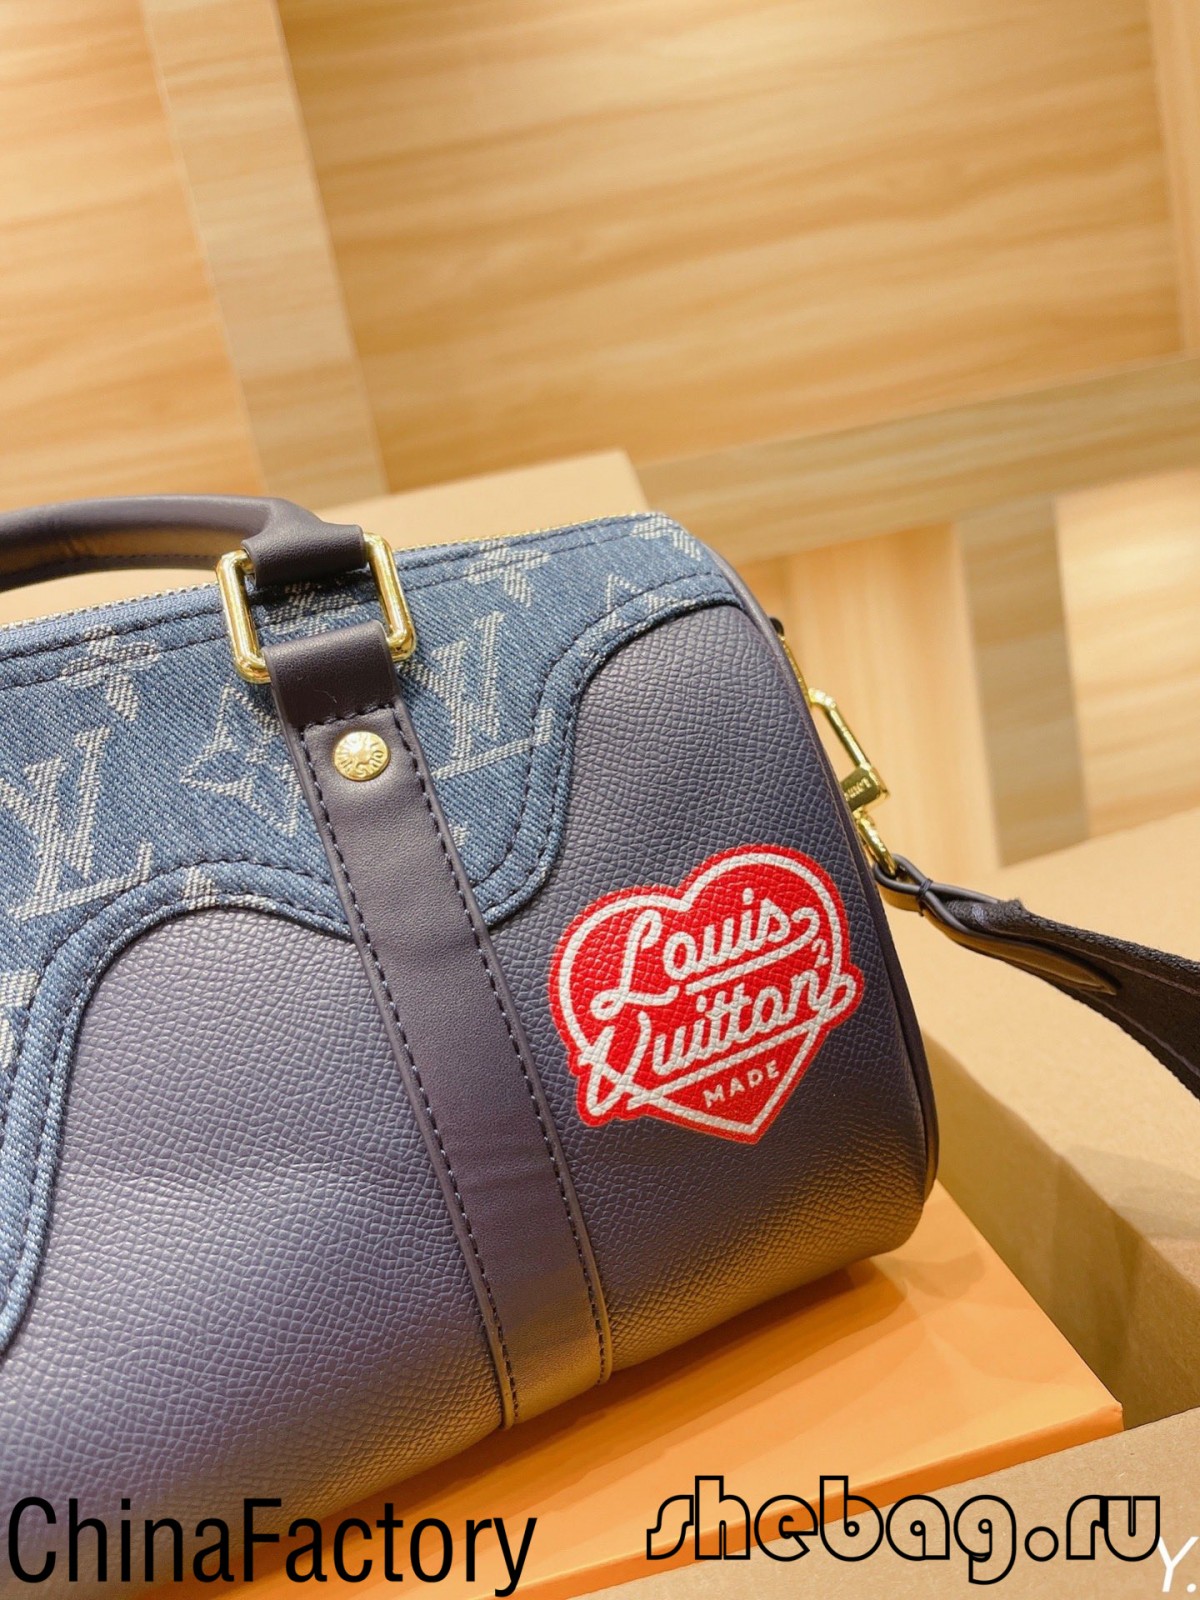 Ааа репліка сумки Louis Vuitton: LV x nigo (2022 Hottest) - Інтернет-магазин підробленої сумки Louis Vuitton найкращої якості, копія дизайнерської сумки ru